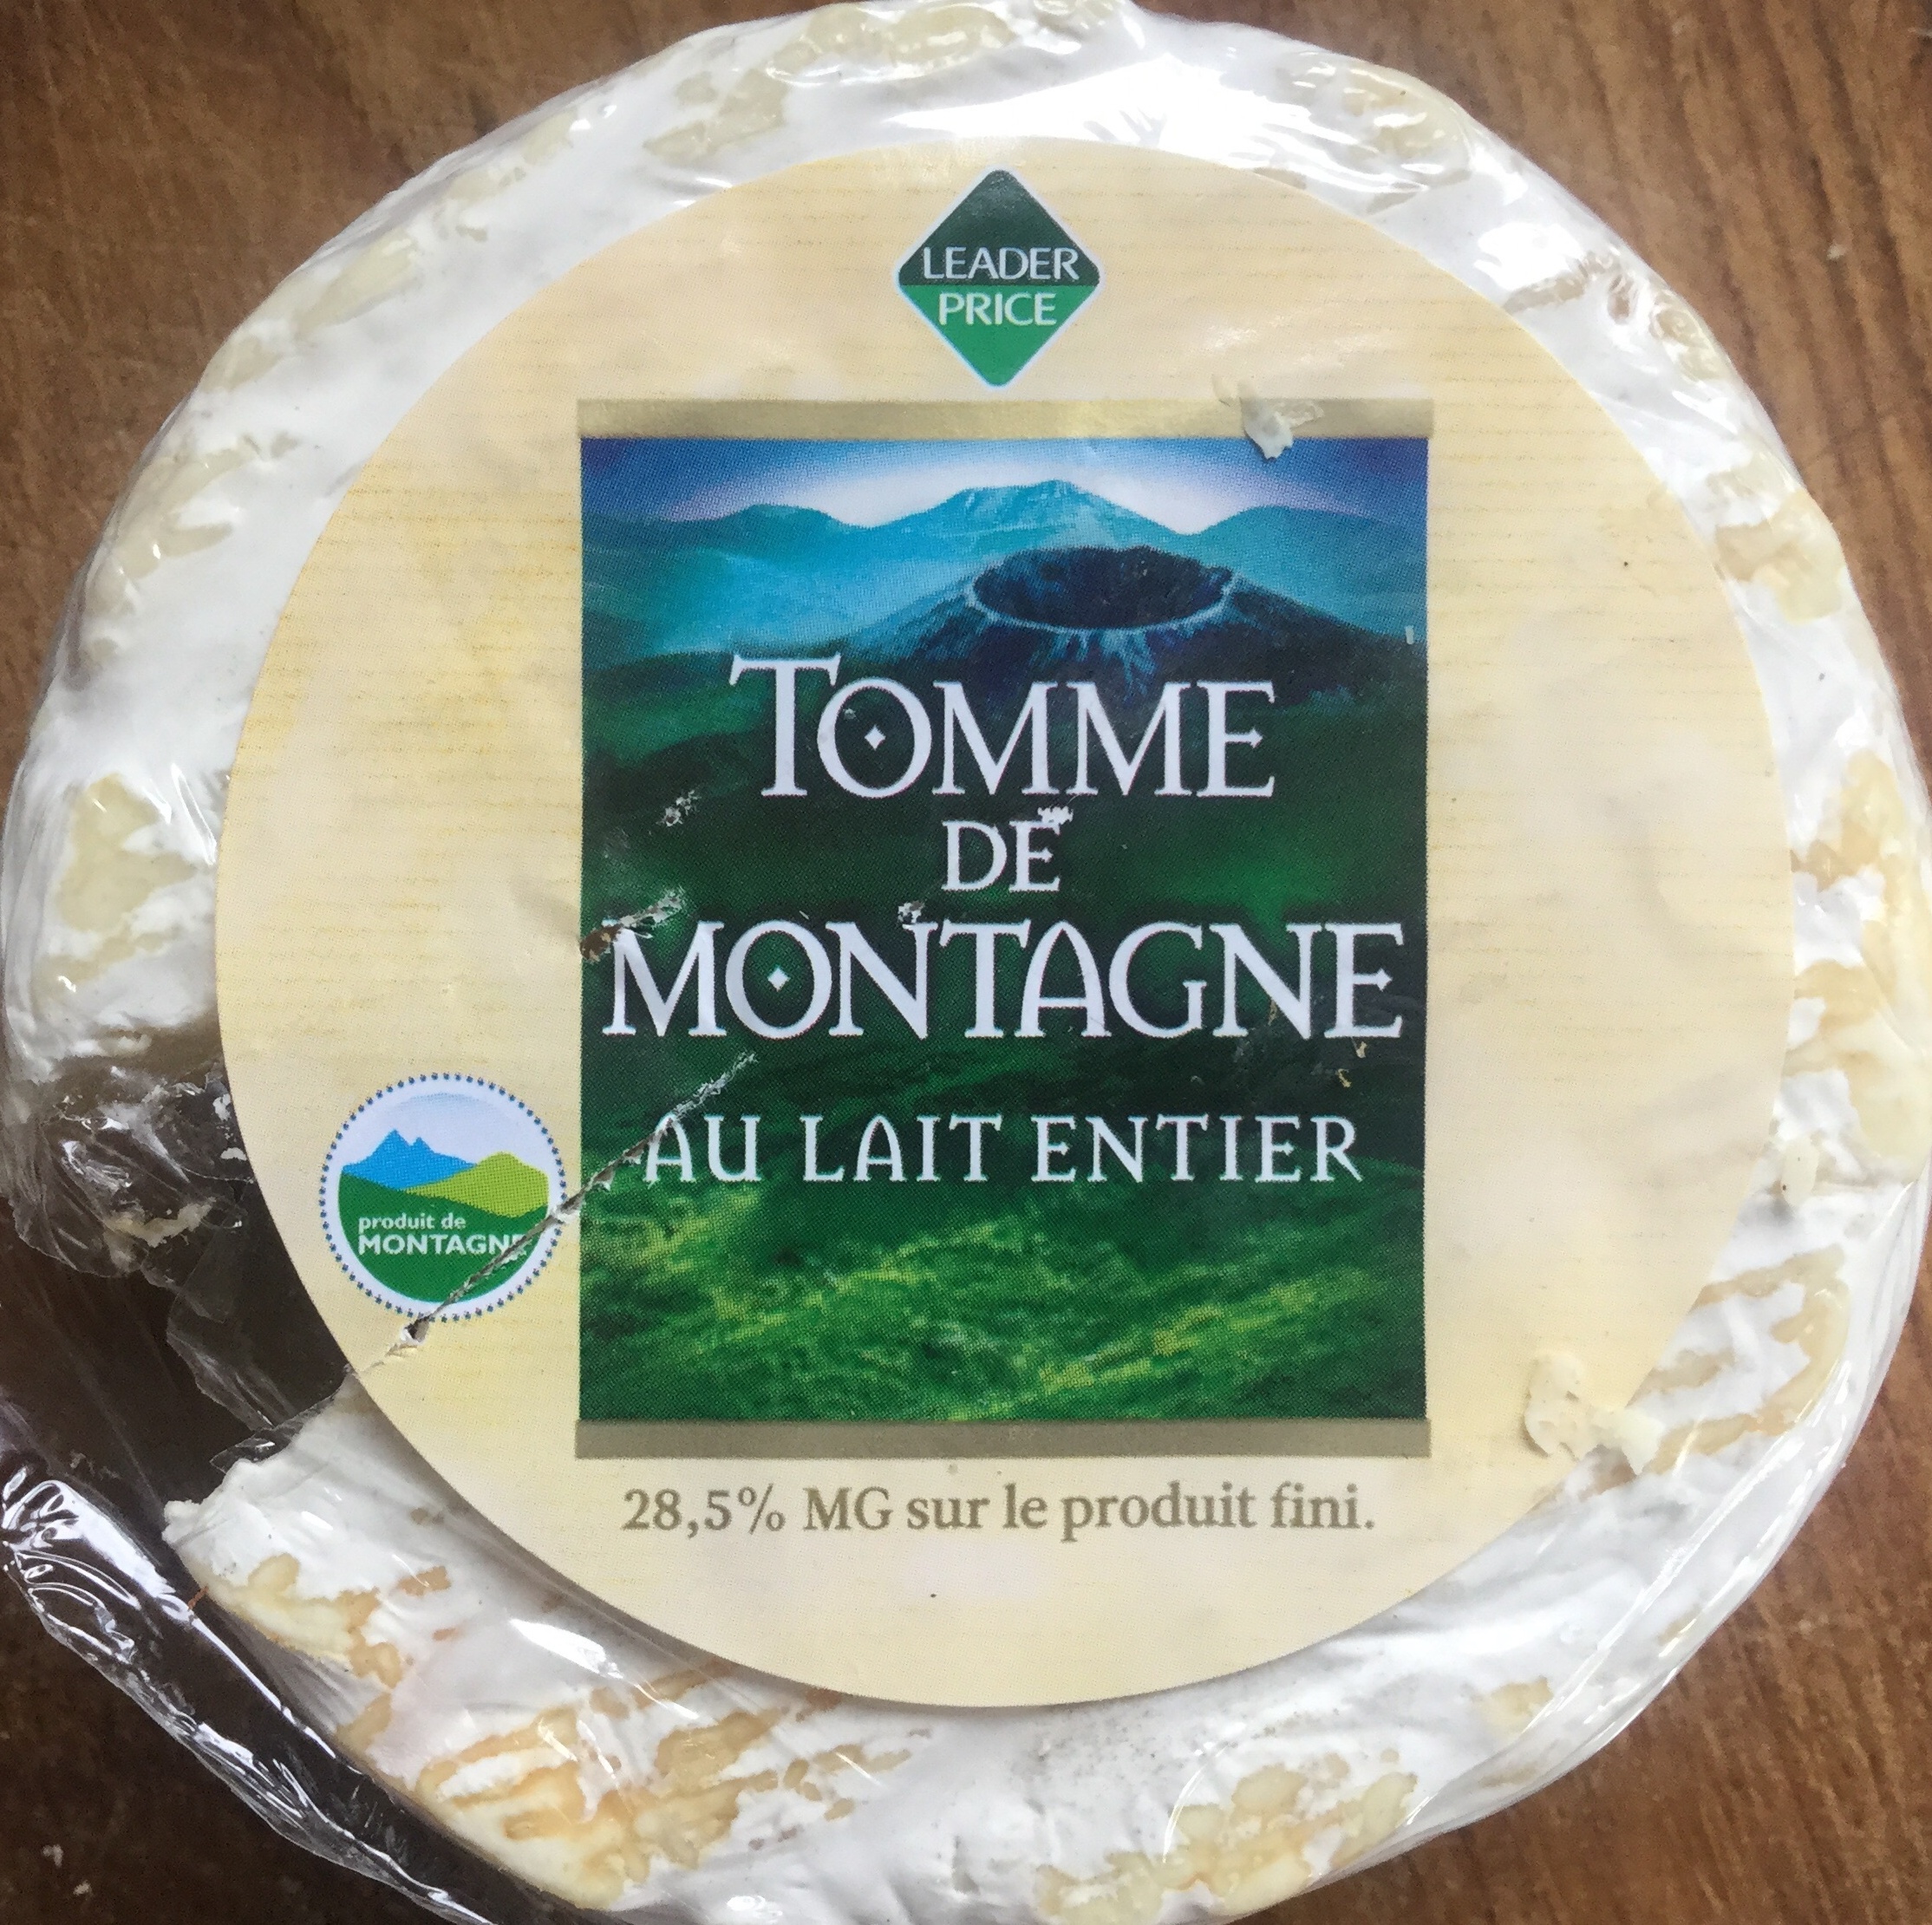 Tomme de Montagne au lait entier - Product - fr